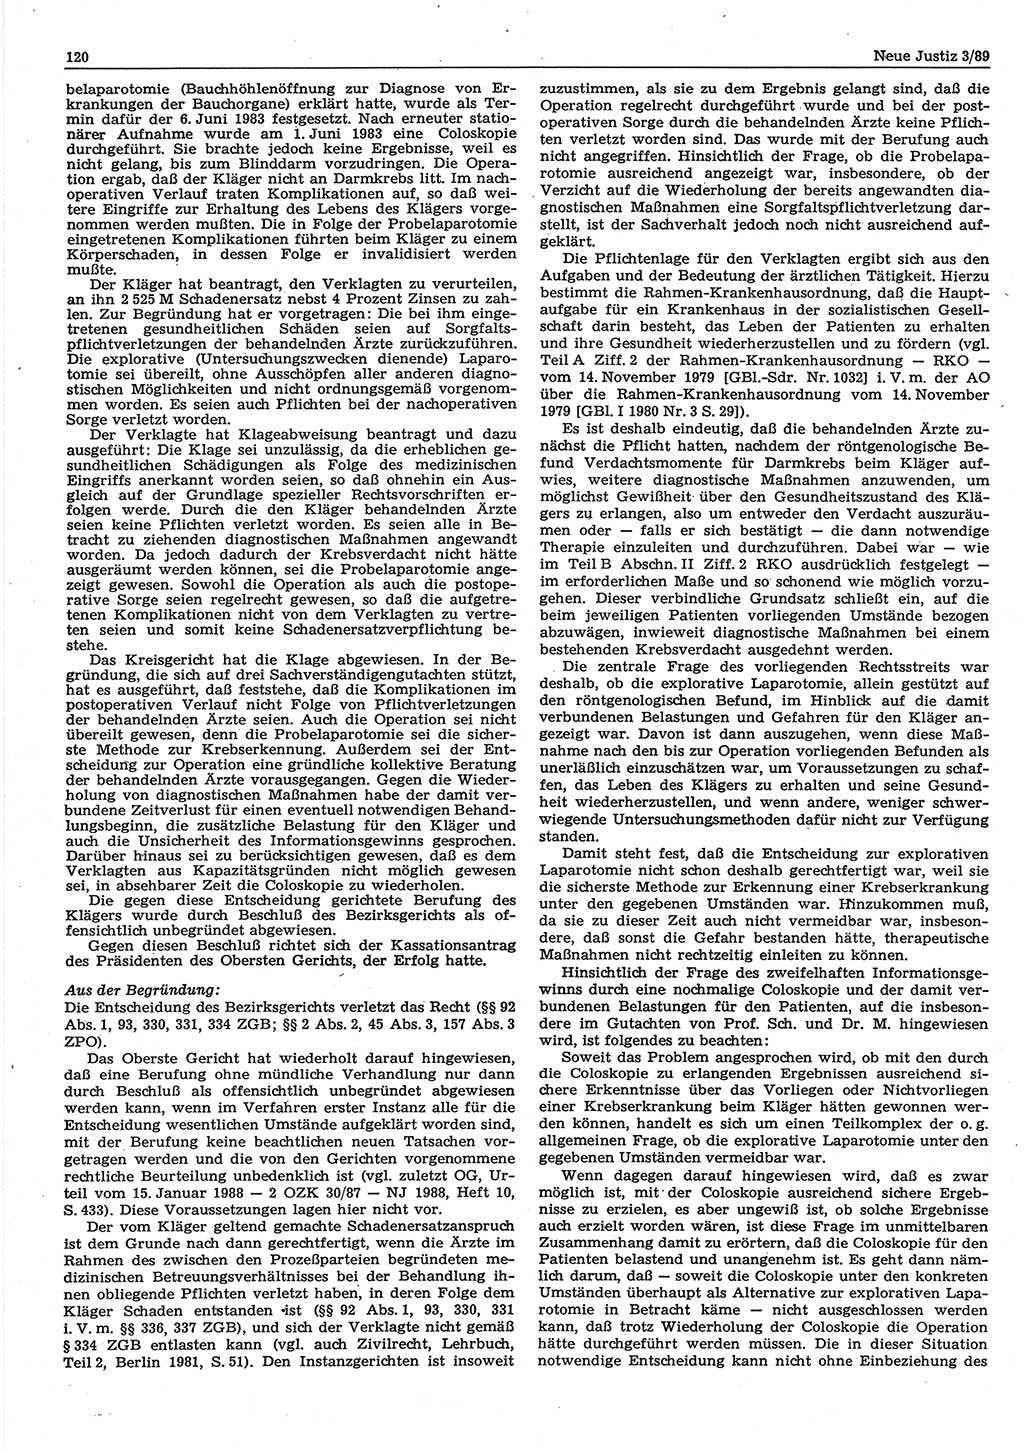 Neue Justiz (NJ), Zeitschrift für sozialistisches Recht und Gesetzlichkeit [Deutsche Demokratische Republik (DDR)], 43. Jahrgang 1989, Seite 120 (NJ DDR 1989, S. 120)